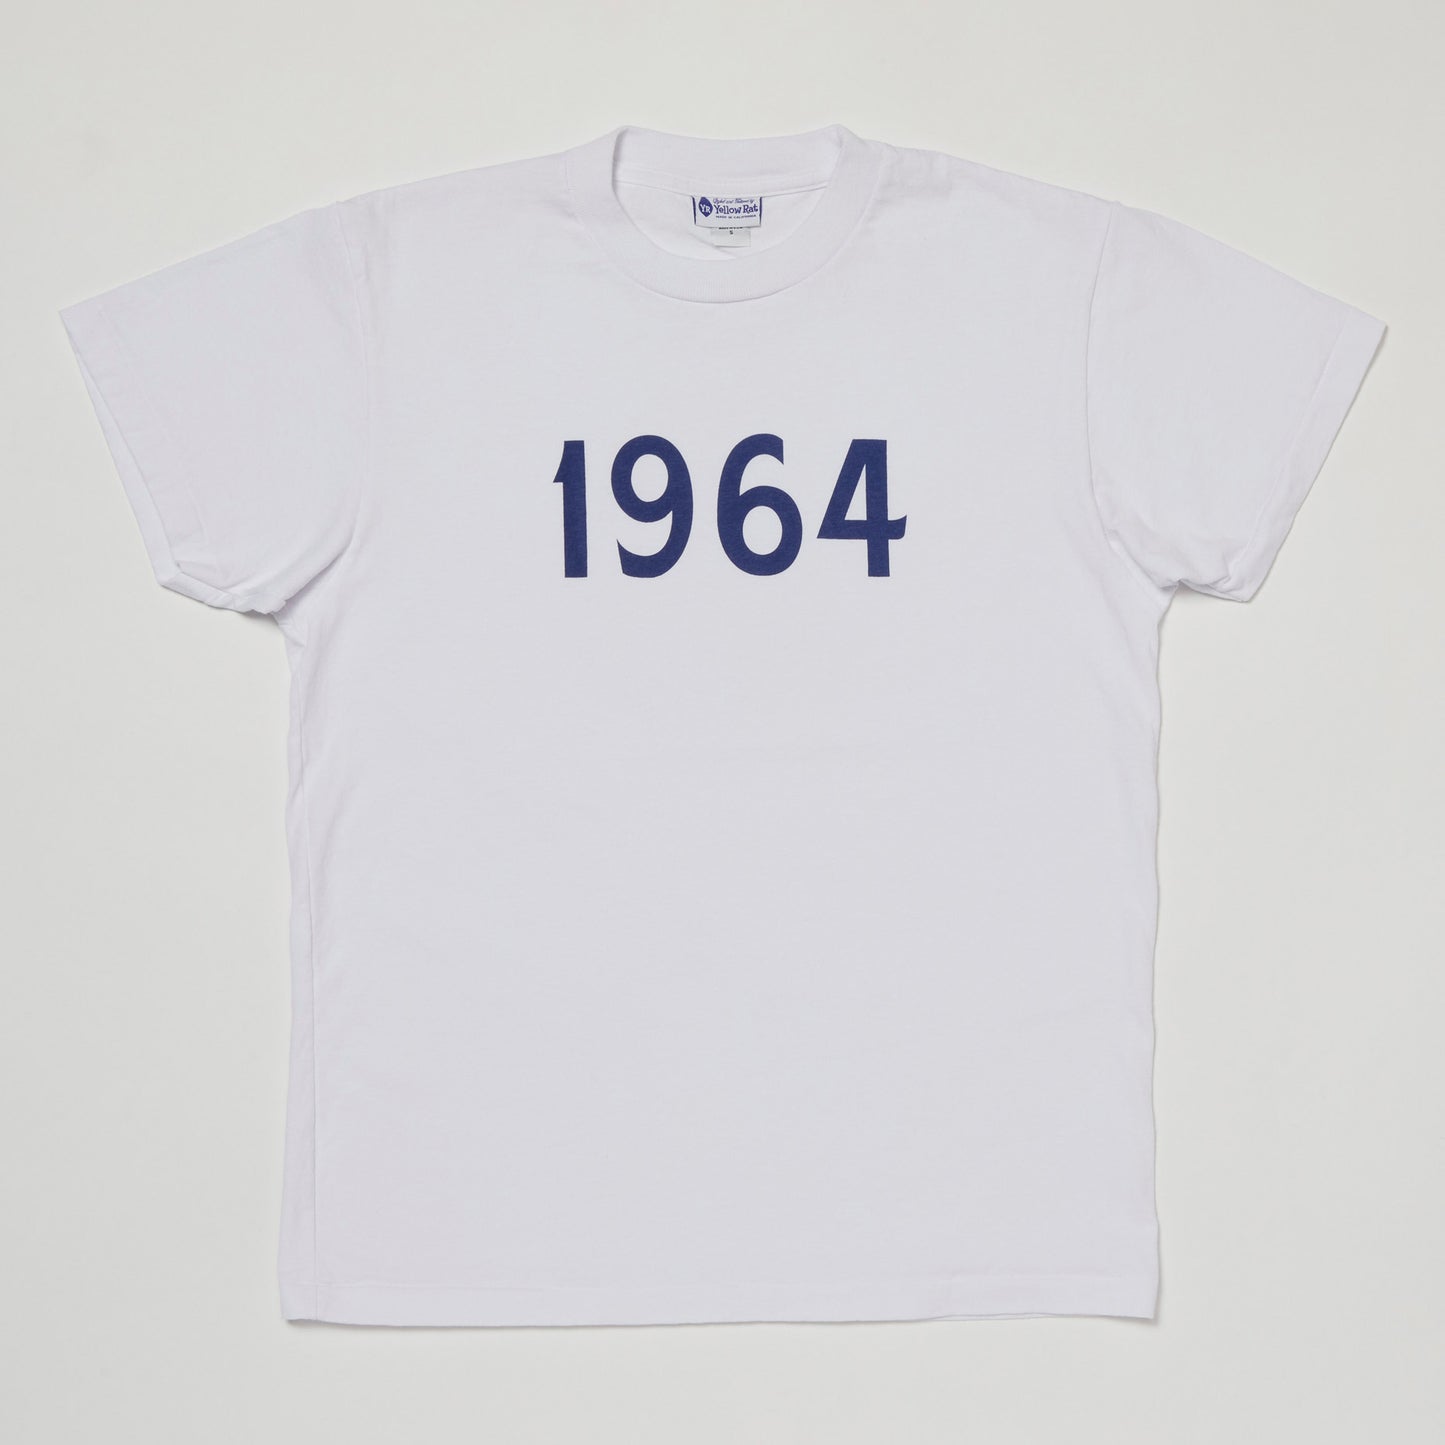 1964 T-shirt (White)